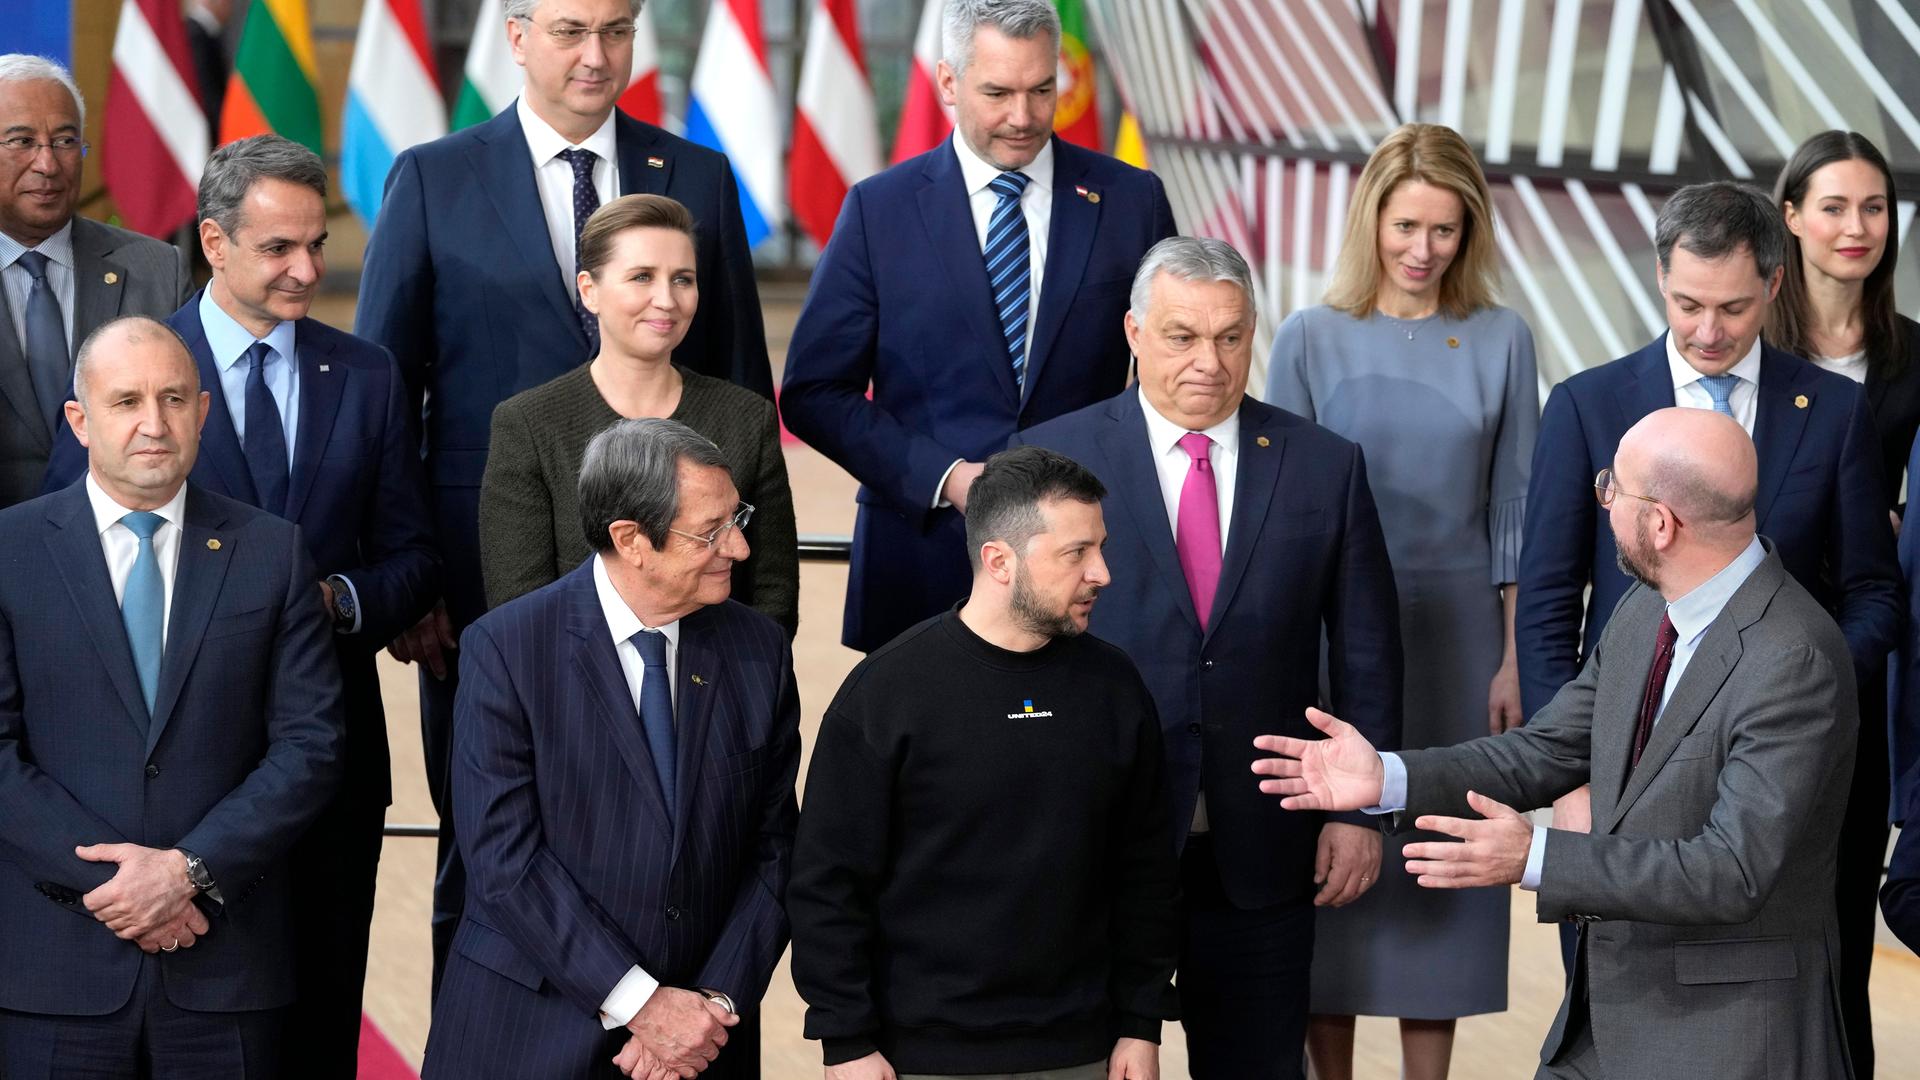 Das ist ein Foto von einem früheren Gipfel: Zu sehen sind einige Chefs der EU-Länder und Charles Michel, der Präsident des Europäischen Rates. Michel spricht mit Wolodymyr Selenskyj, dem Präsidenten der Ukraine. Dahinter steht Viktor Orban, der Minister-Präsident von Ungarn.